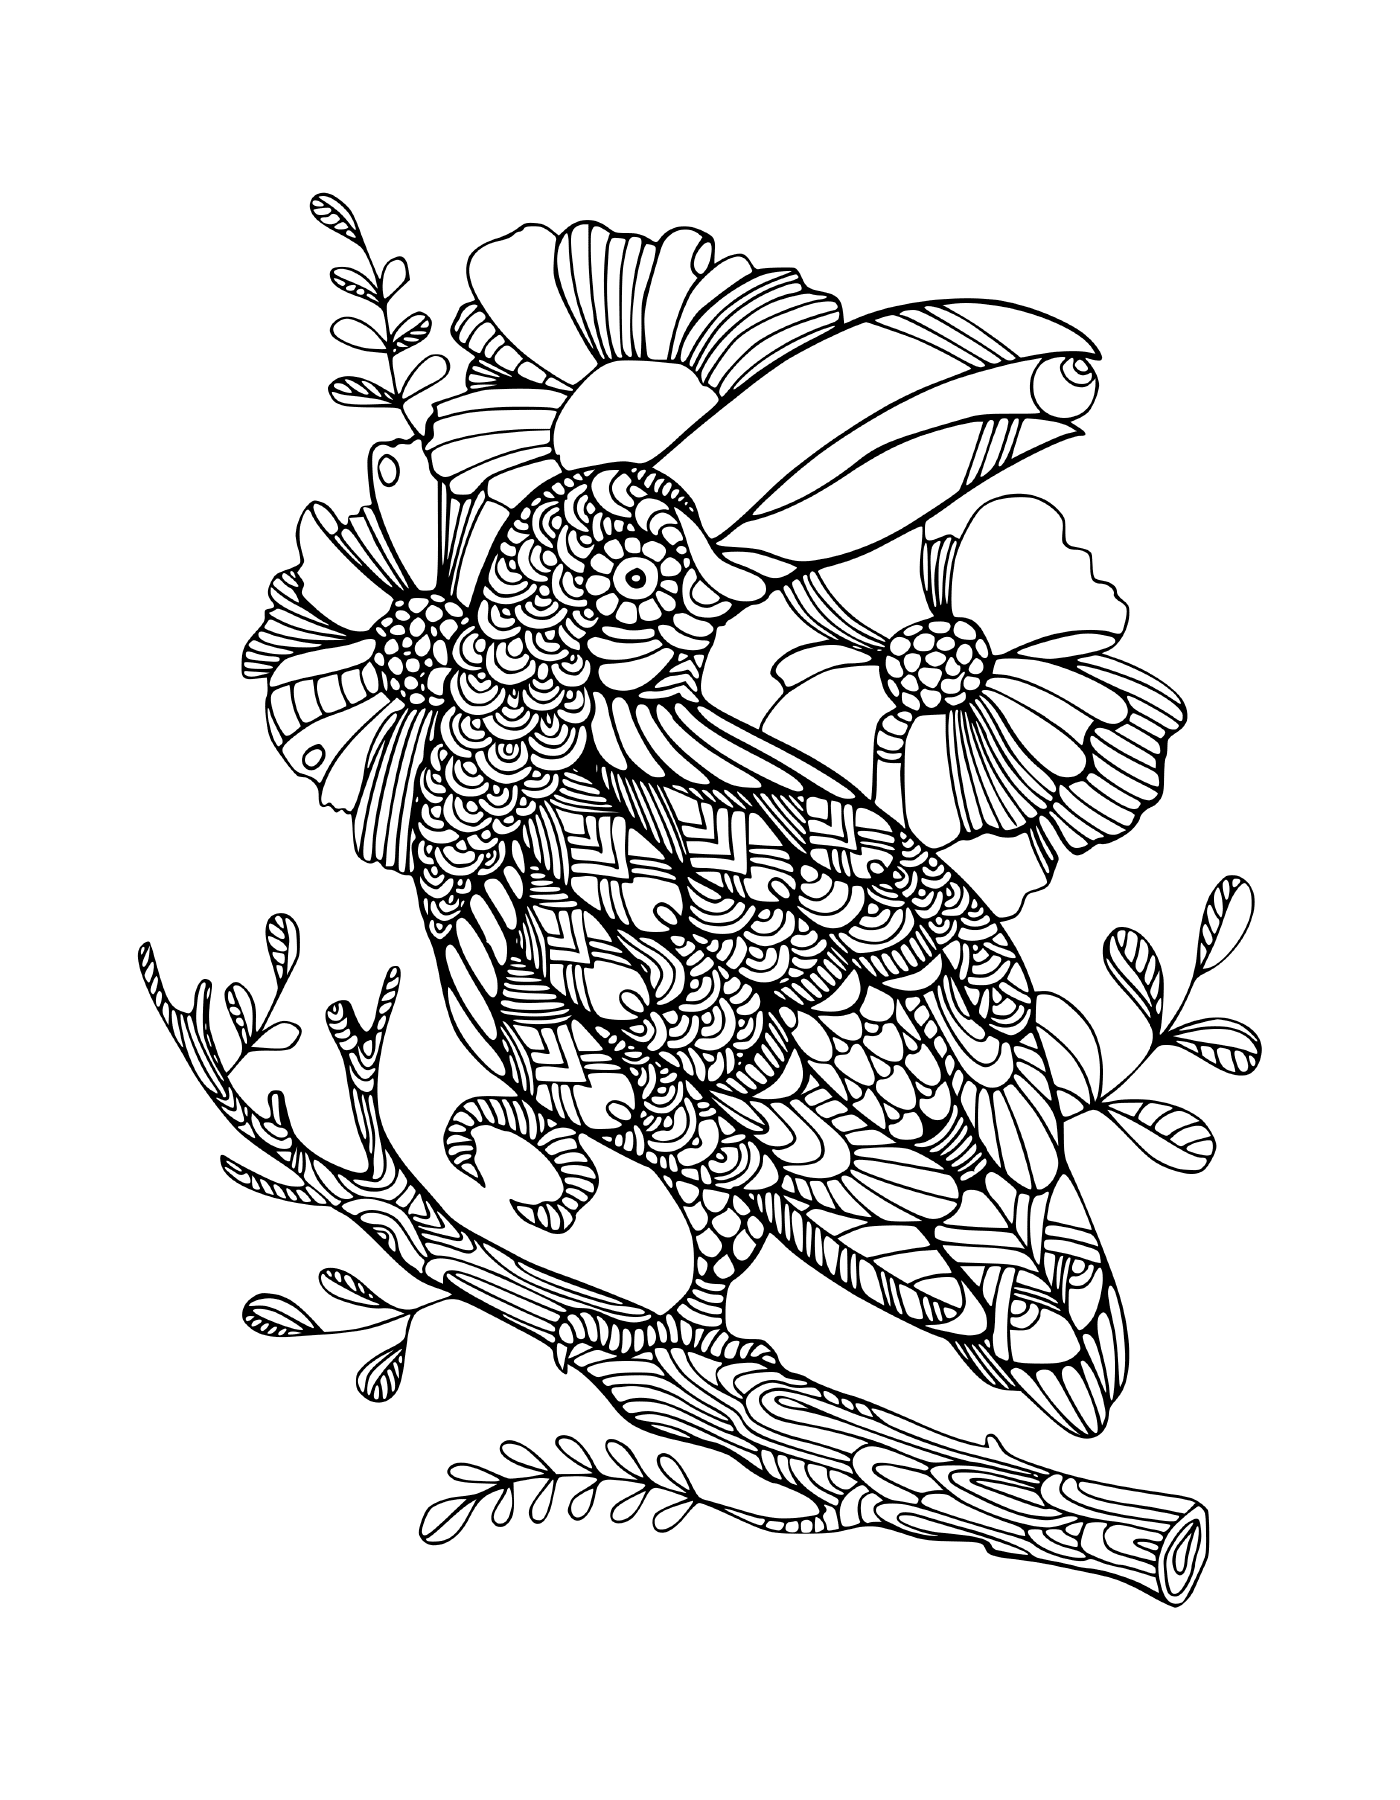  uccello seduto su un ramo d'albero con fiori 